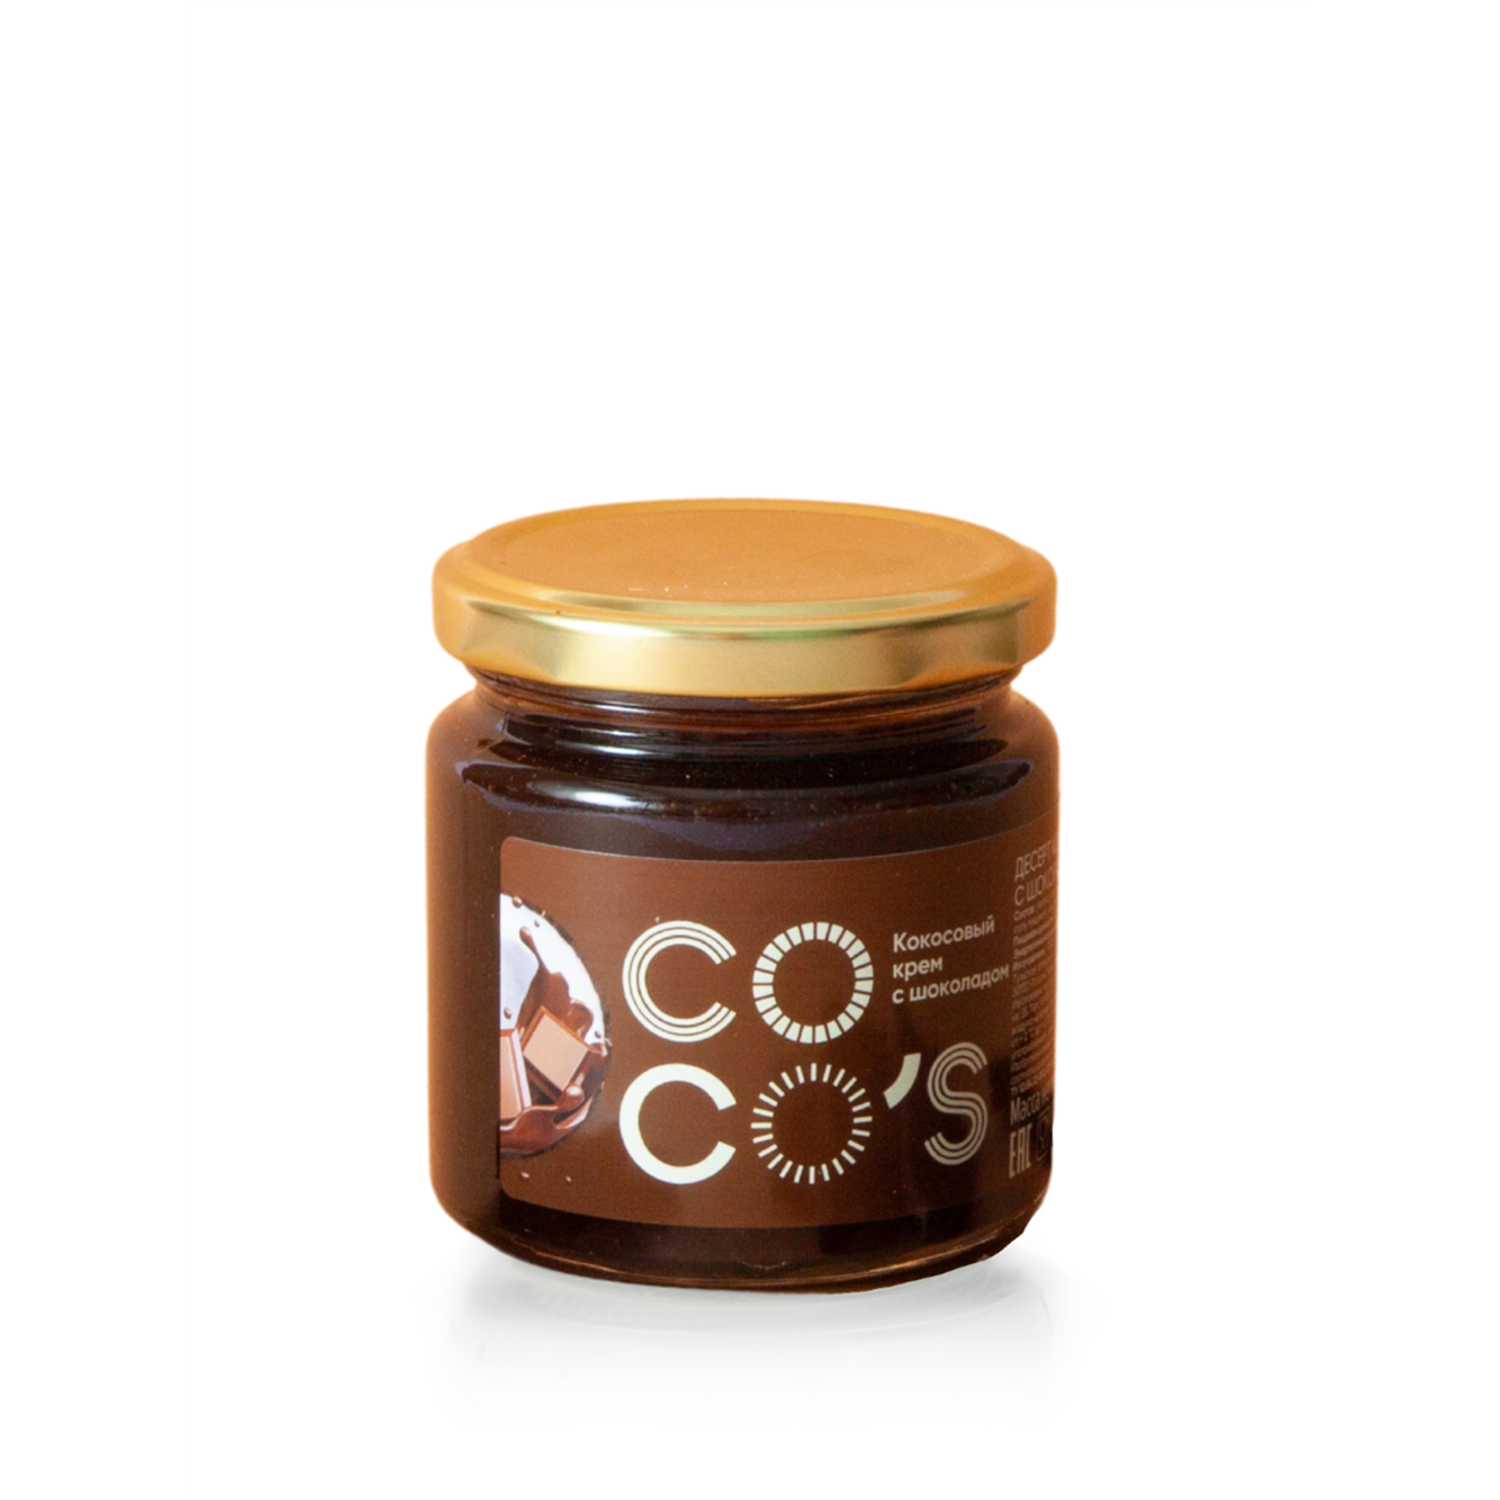 Кокосовая паста без глютена Cocos cream с шоколадом - фото 1